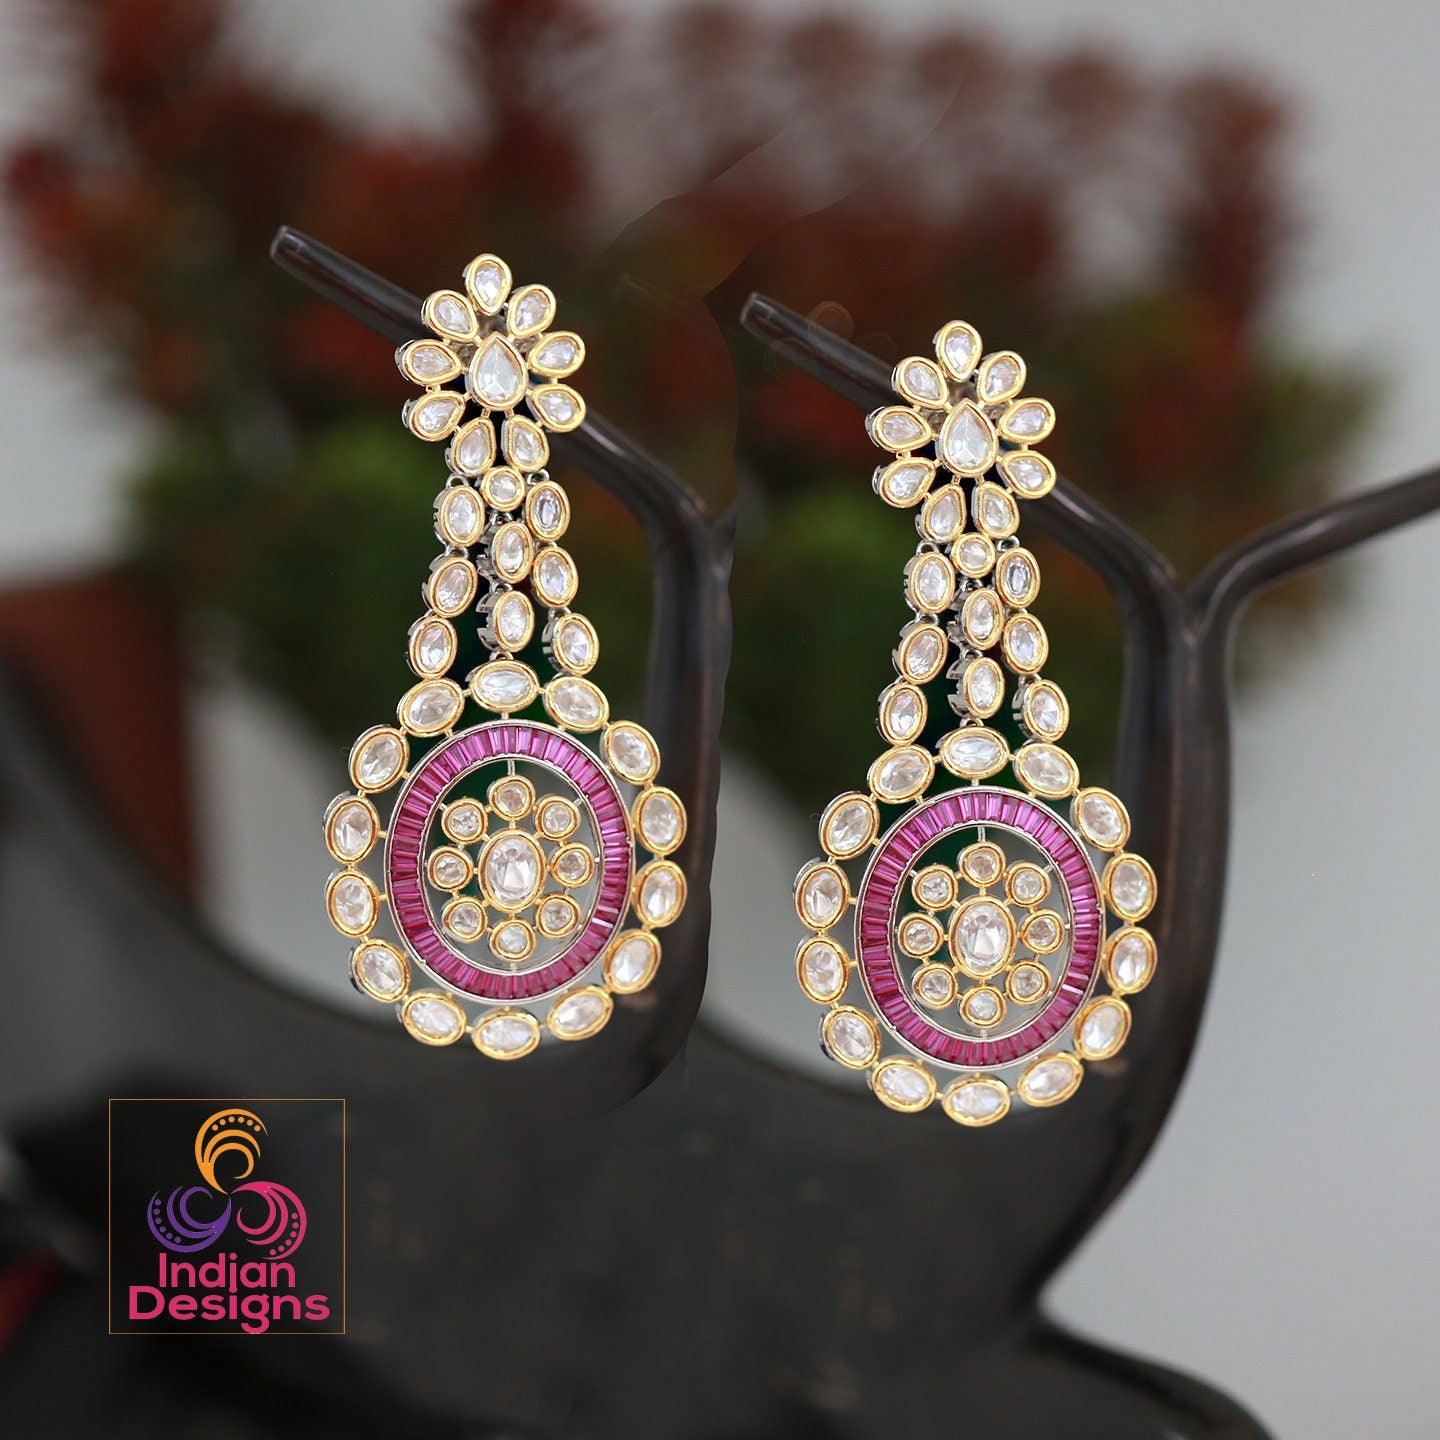 Indian Bollywood Ethnic/ Traditional Polki Maang Tikka Earrings set | eBay